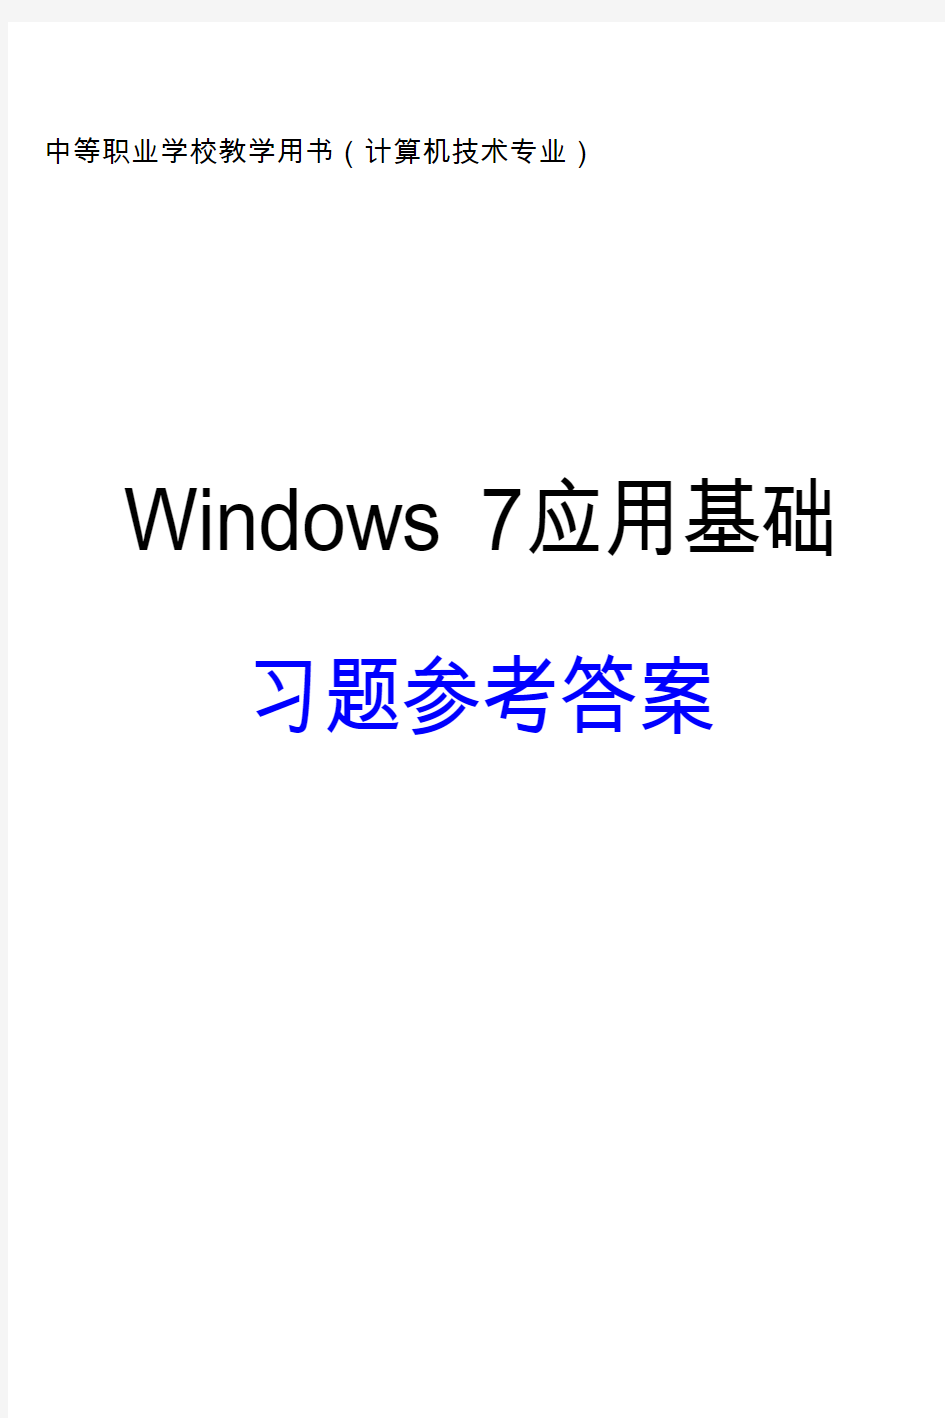 Windows7基础知识练习题